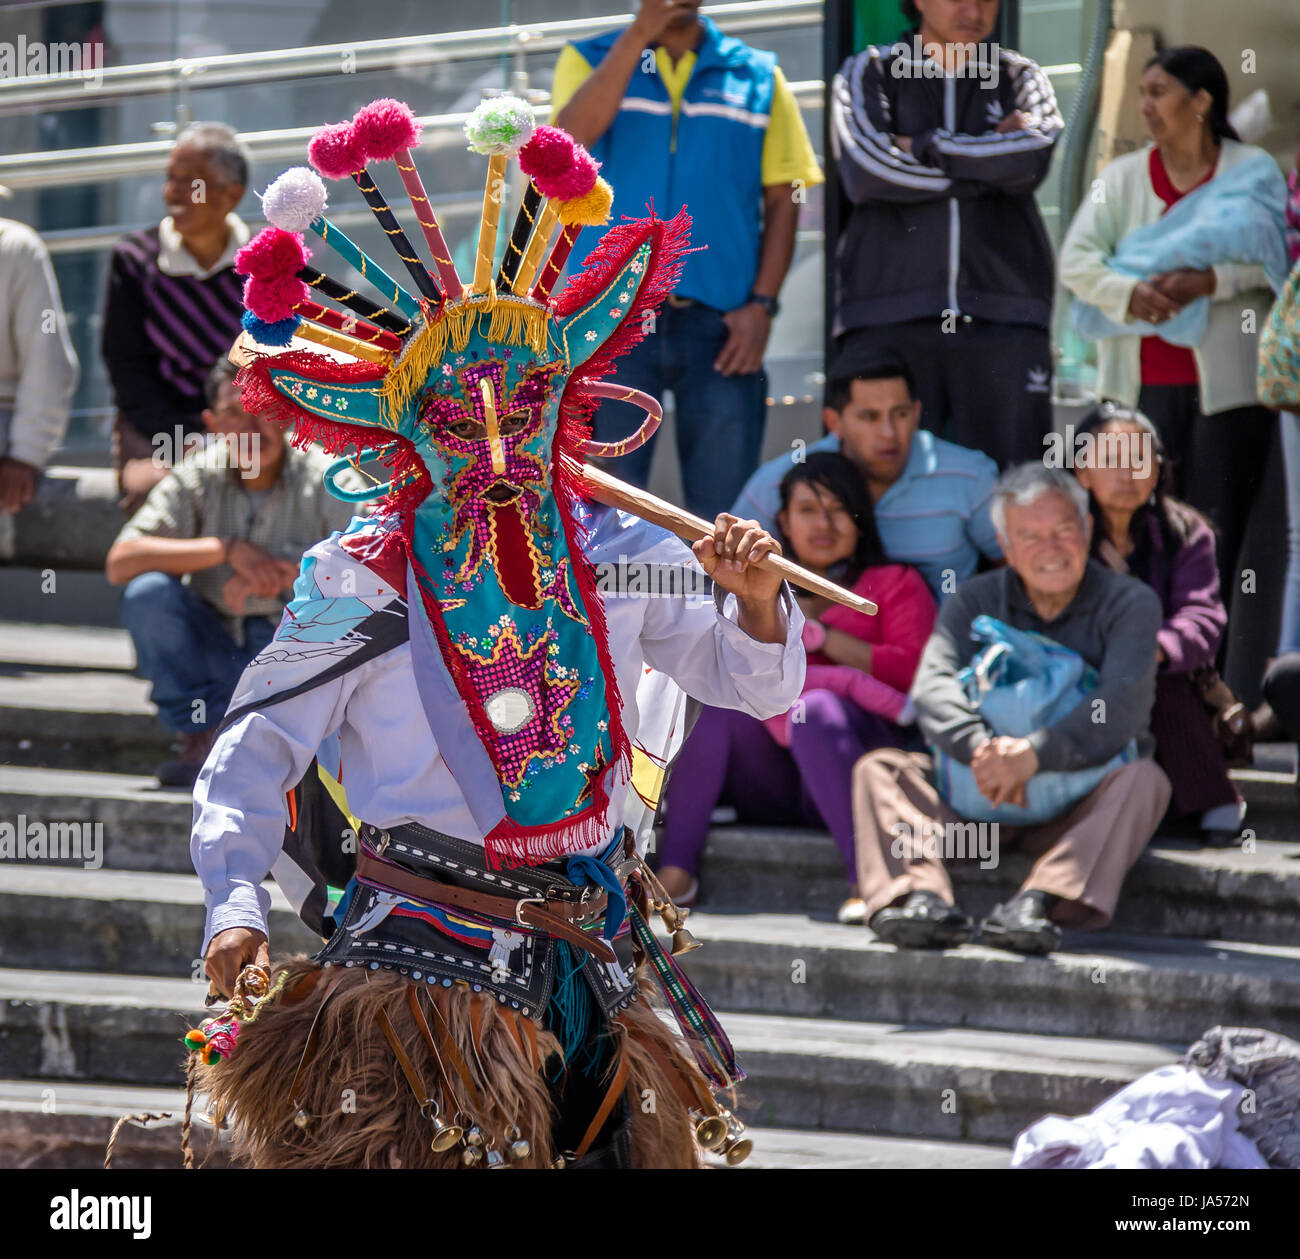 Groupe en costume local effectuant la danse traditionnelle équatorienne - Quito, Équateur Banque D'Images